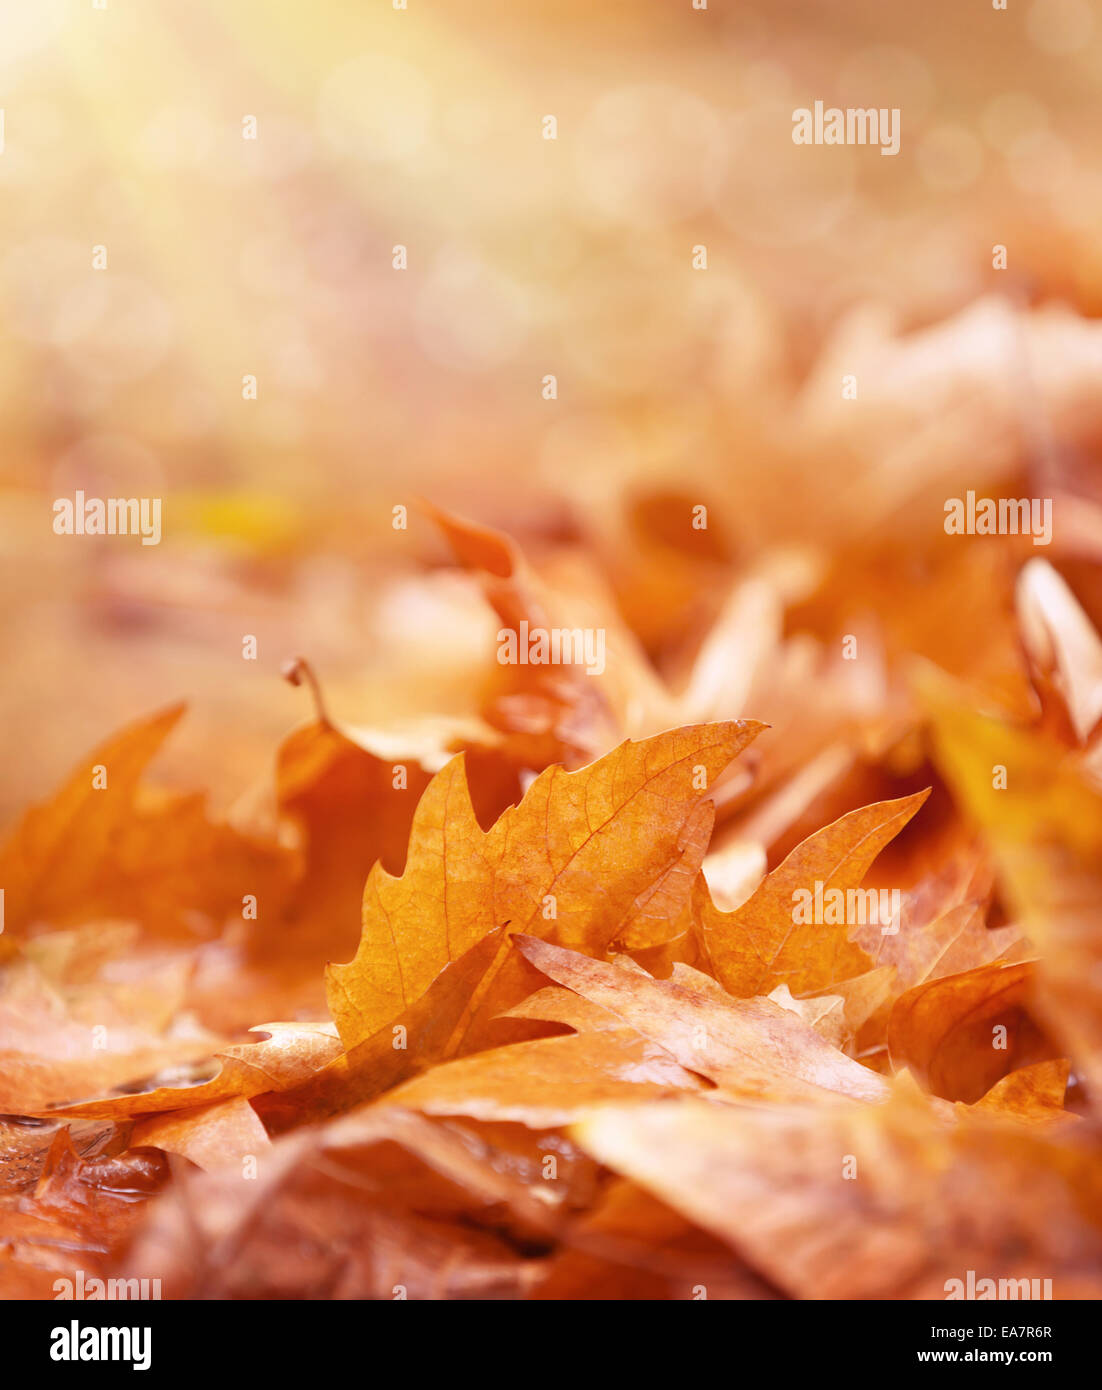 Trockenes Laub auf dem Boden, abstrakte Herbst Hintergrund, alte goldene Ahornblätter, Weichzeichner, Herbst-Saison-Konzept Stockfoto